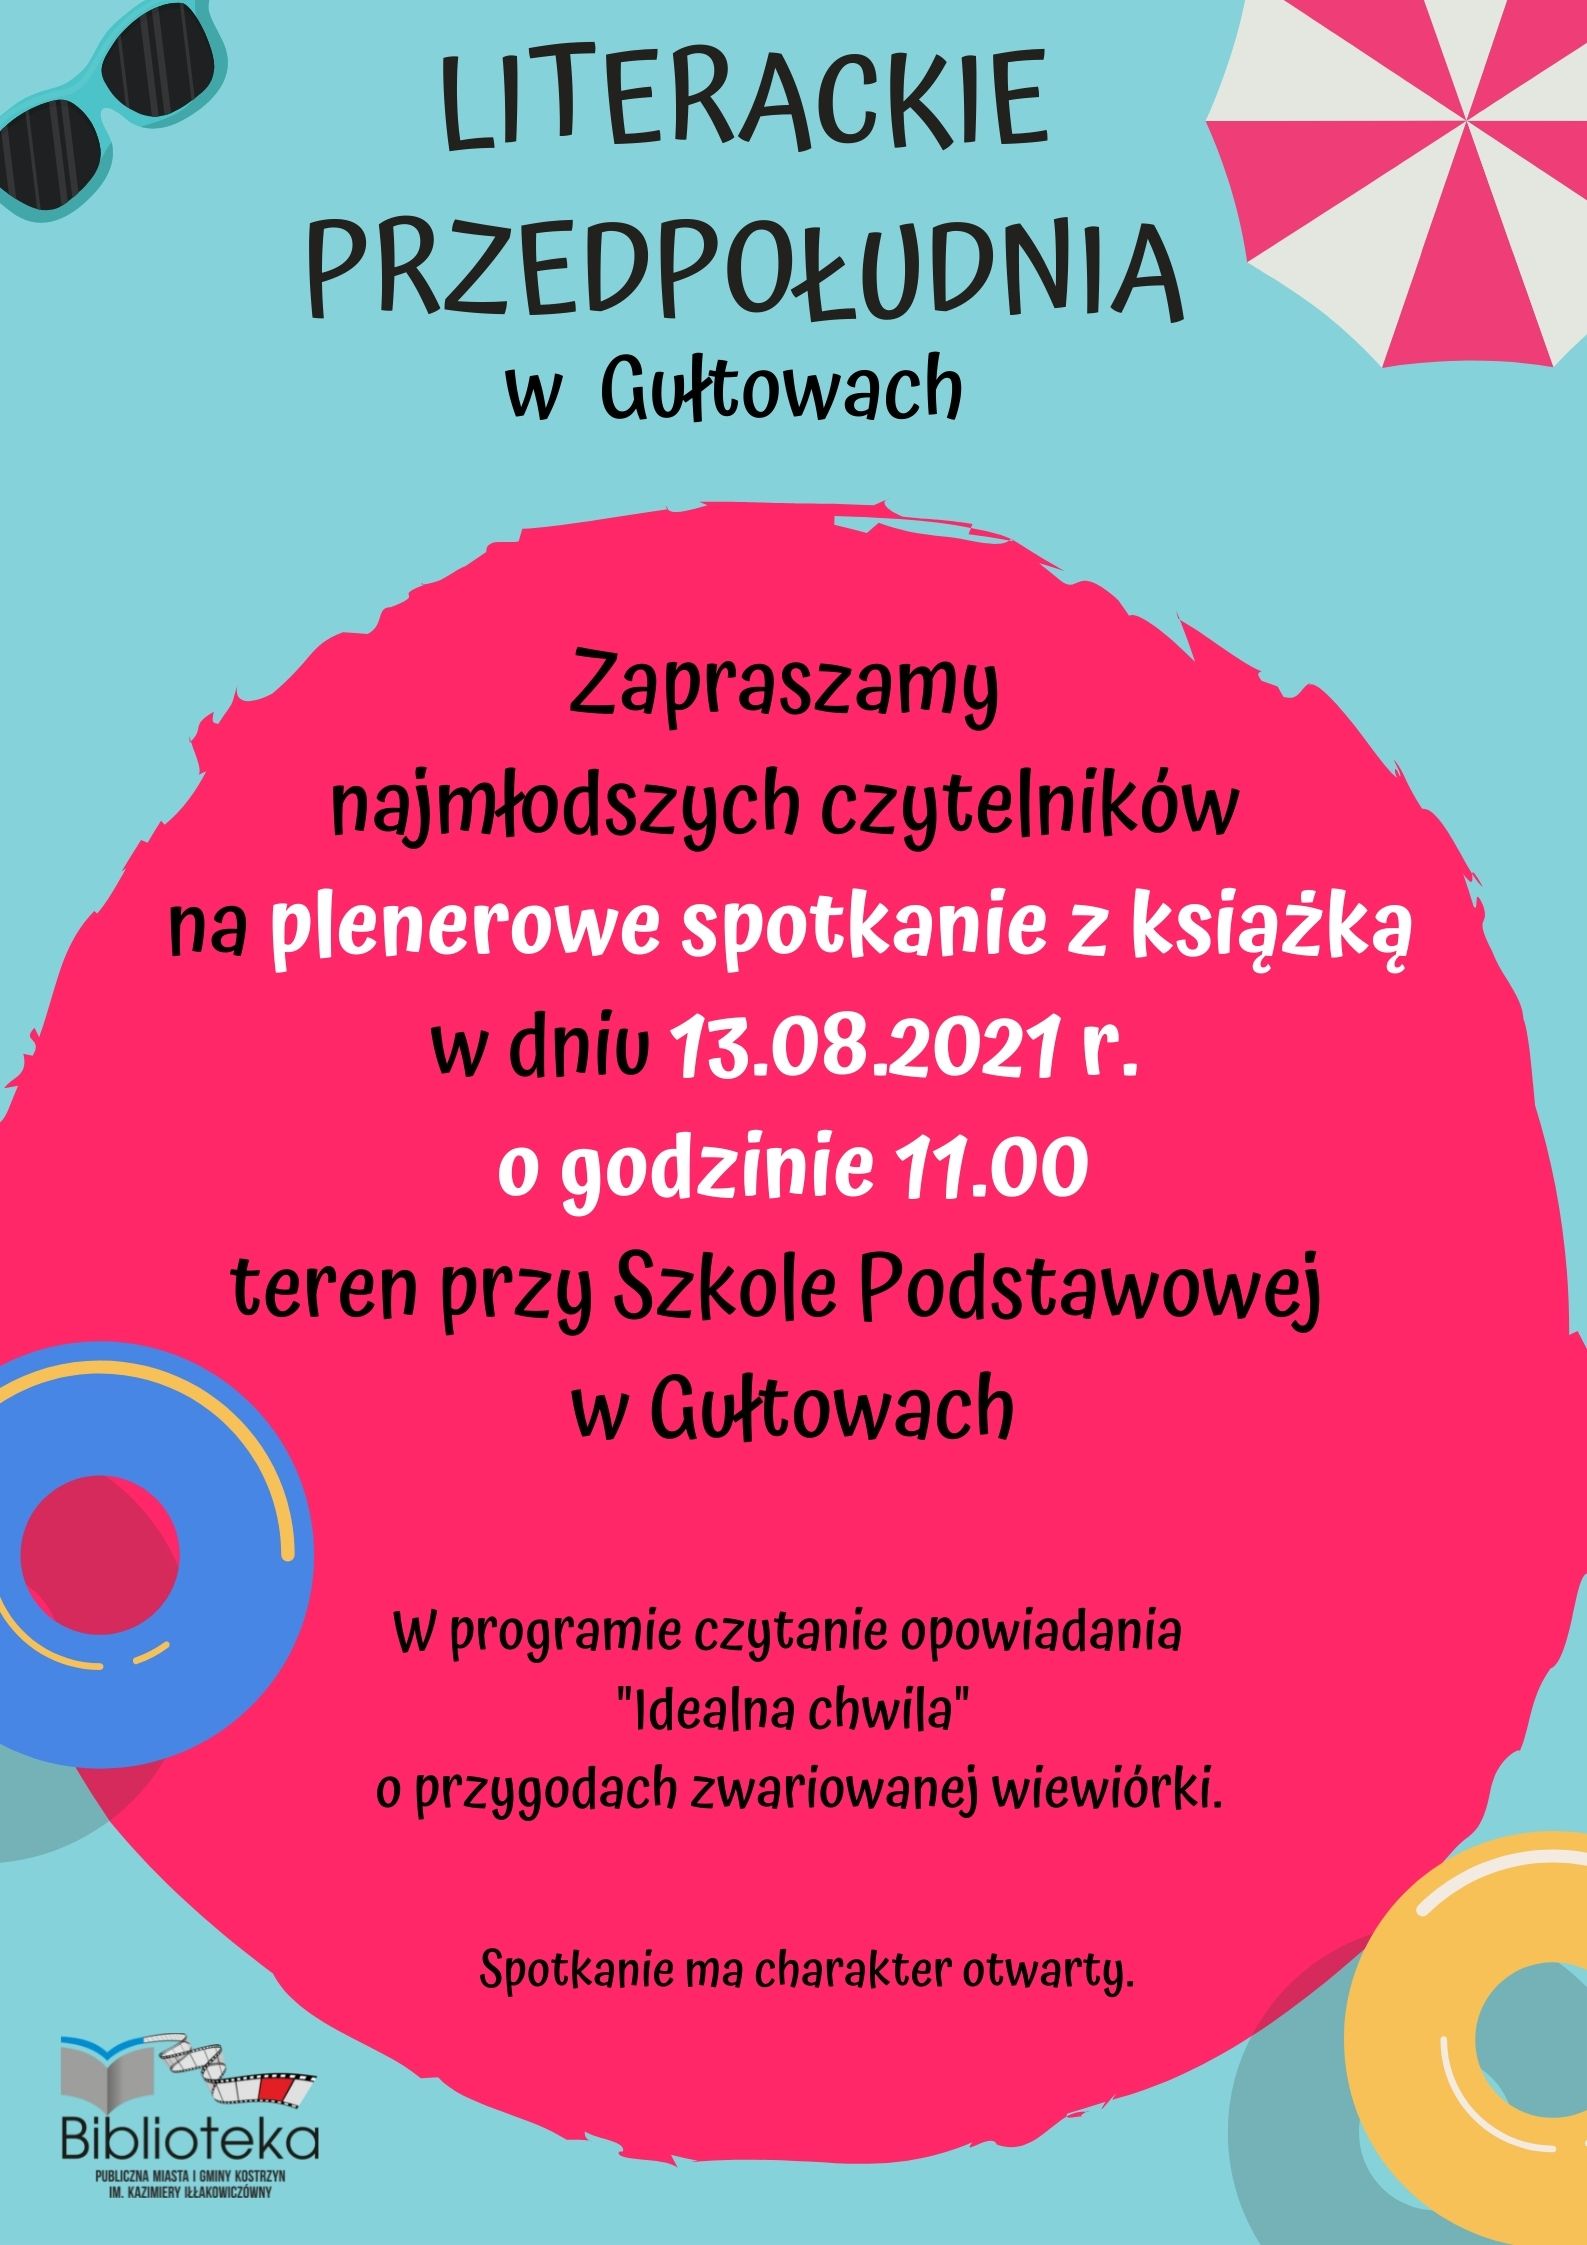 plakat informacyjny o spotkaniu plenerowym z książką dla dzieci w Gułtowach w piatek o godzinie 11